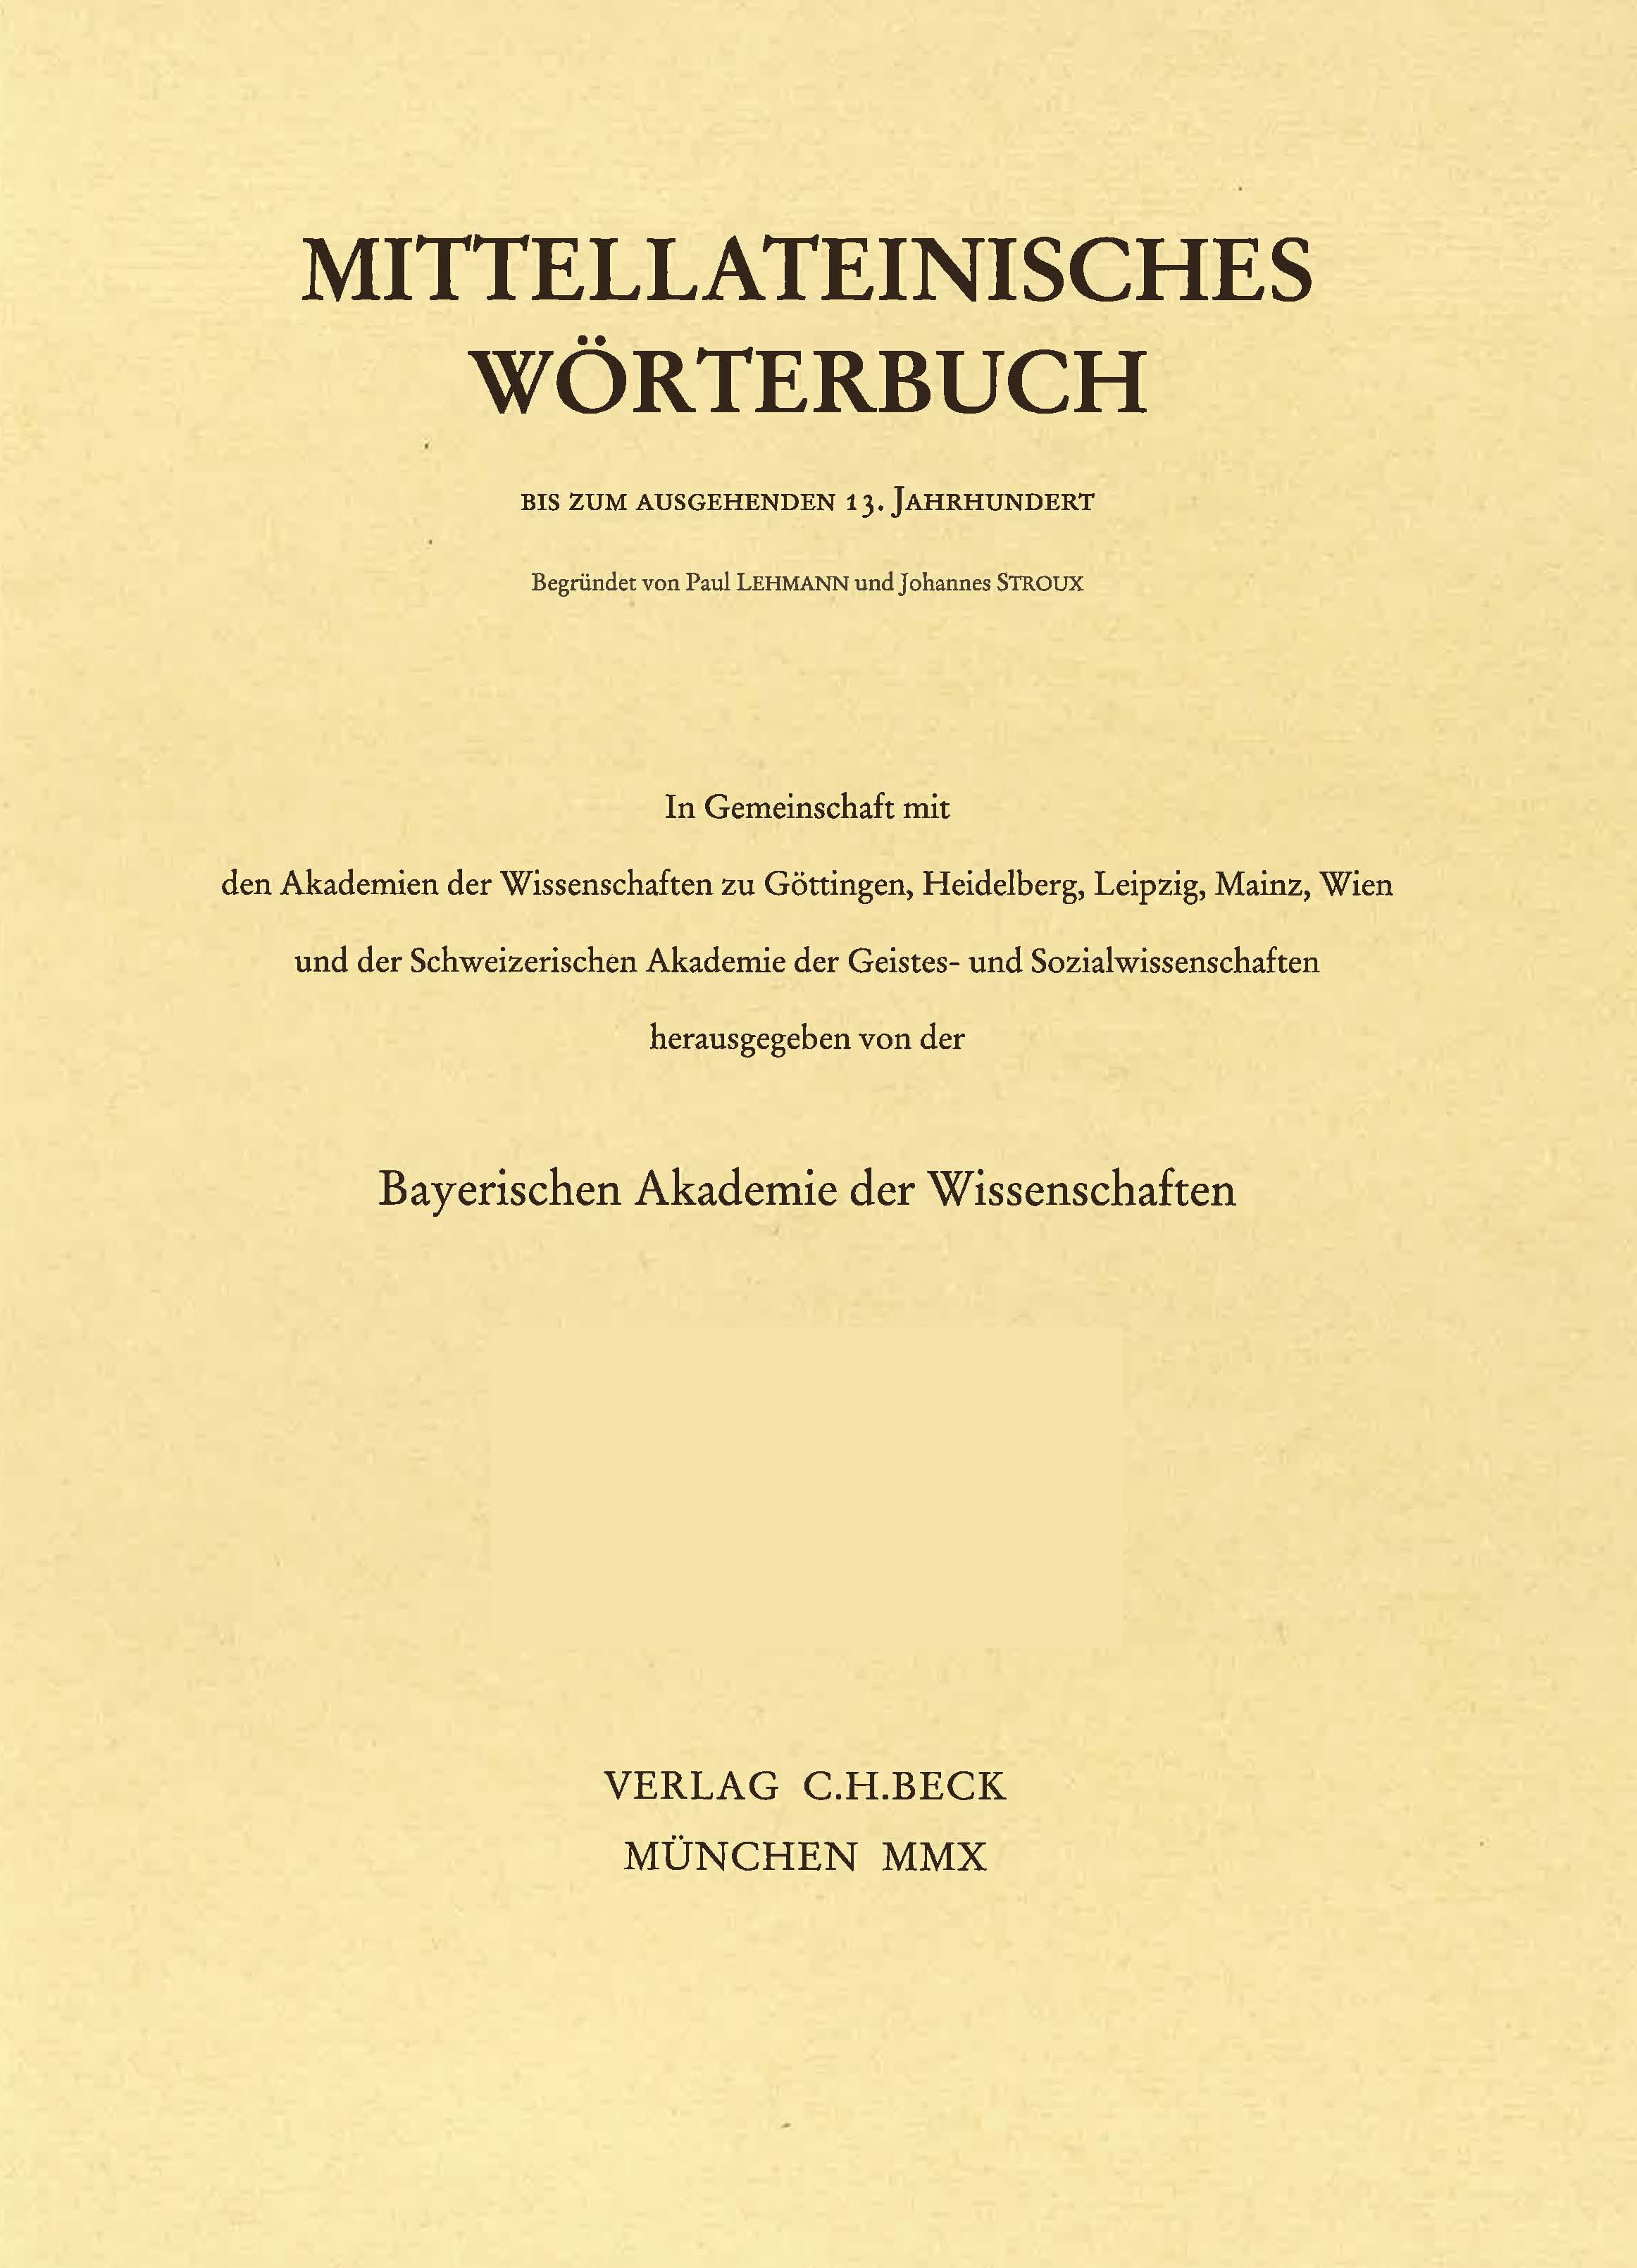 Cover:, Mittellateinisches Wörterbuch  35. Lieferung (eximius - ezemenius) mit Einbanddecke